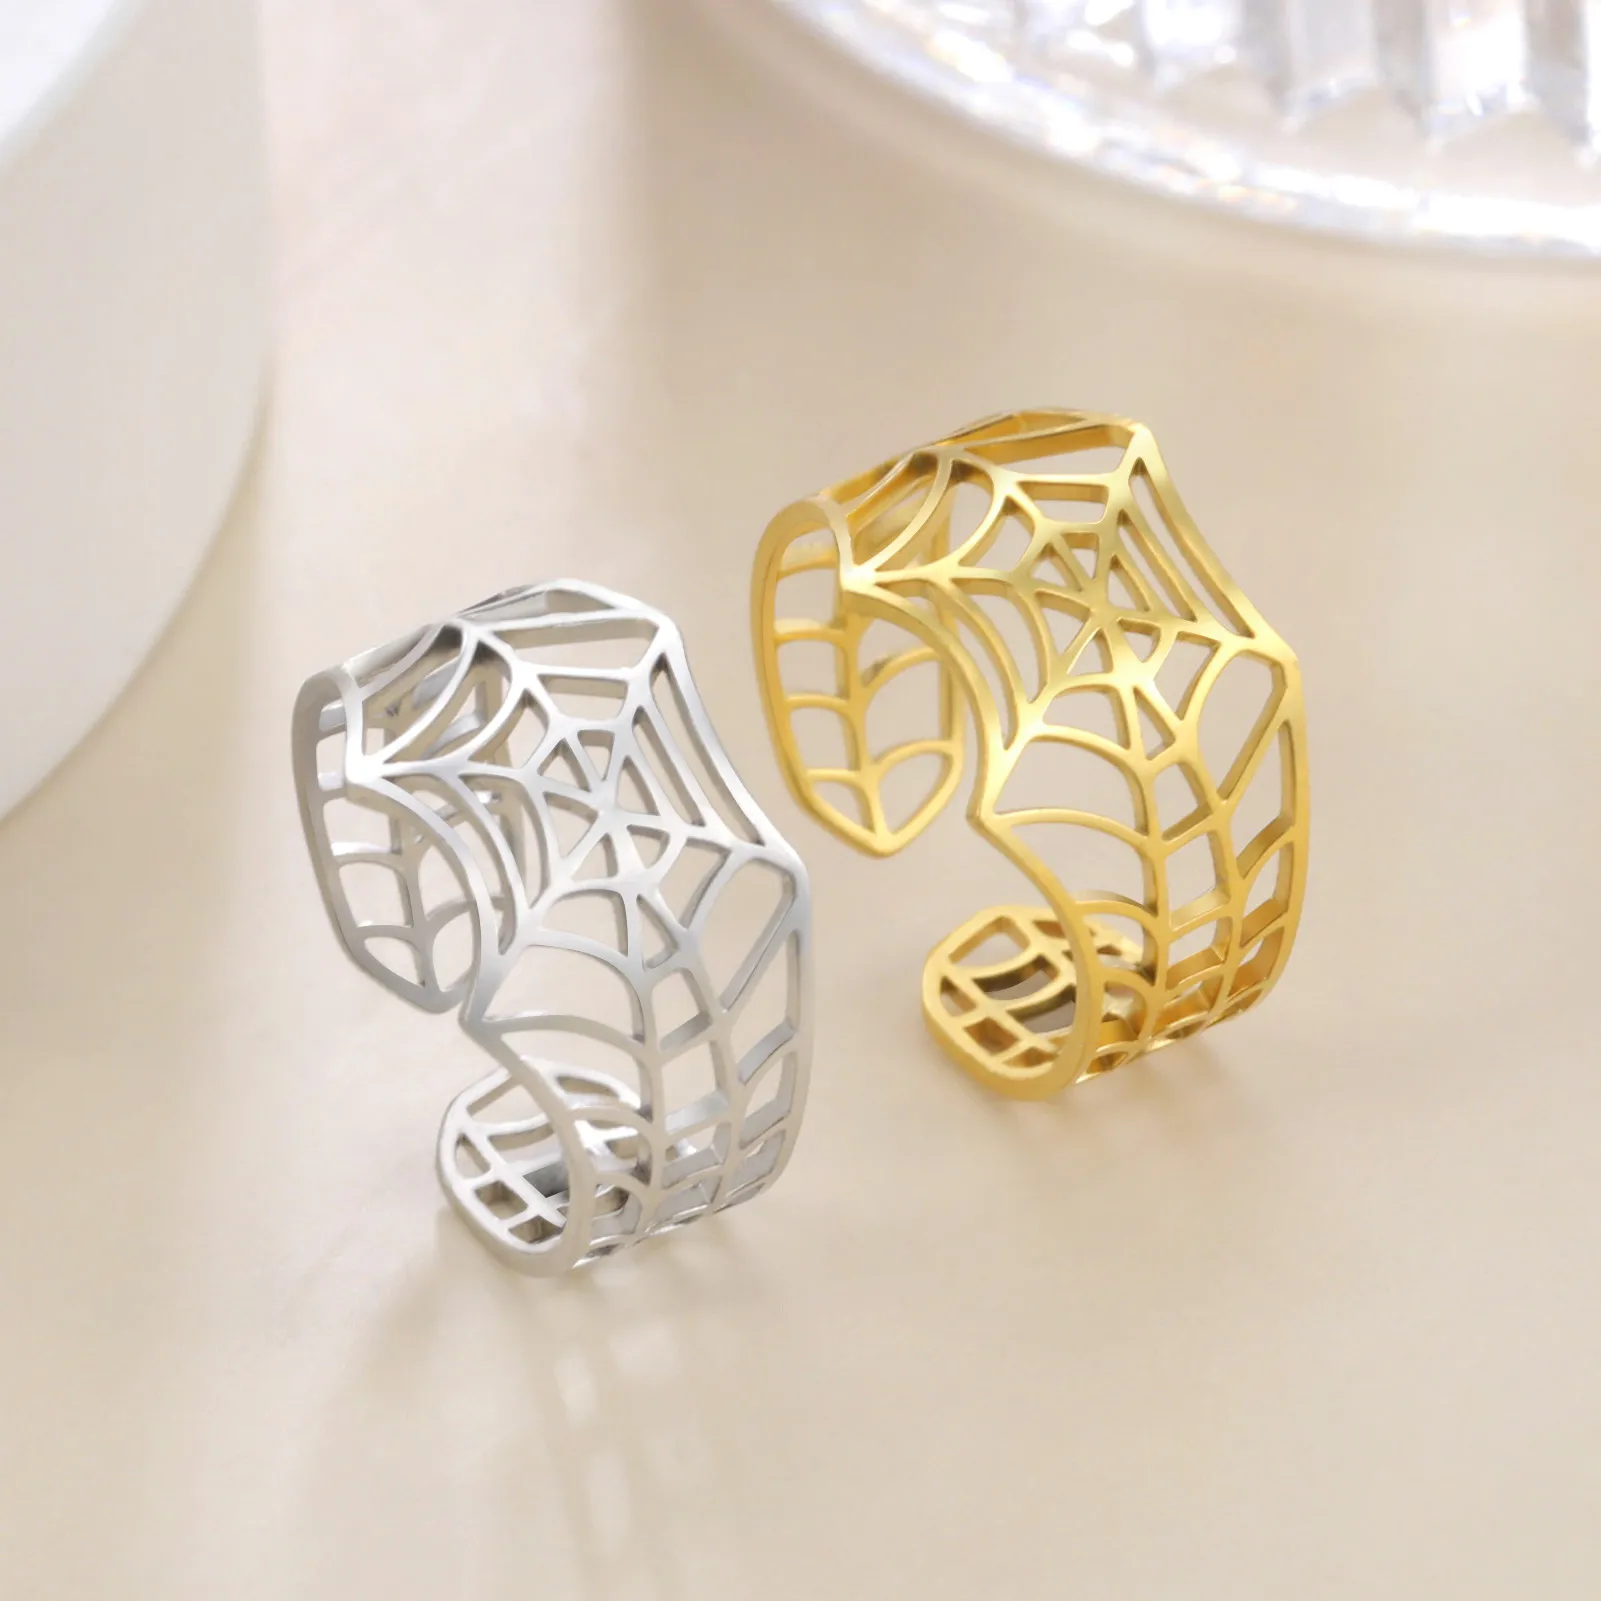 SpiderMan-Ring, verstellbare Öffnung, Edelstahl-Spinnennetz-Ring, vergoldete Silberfarbe, stilvoller Schmuck, Geschenk mit Box, Großhandel und Dropshipping unterstützt